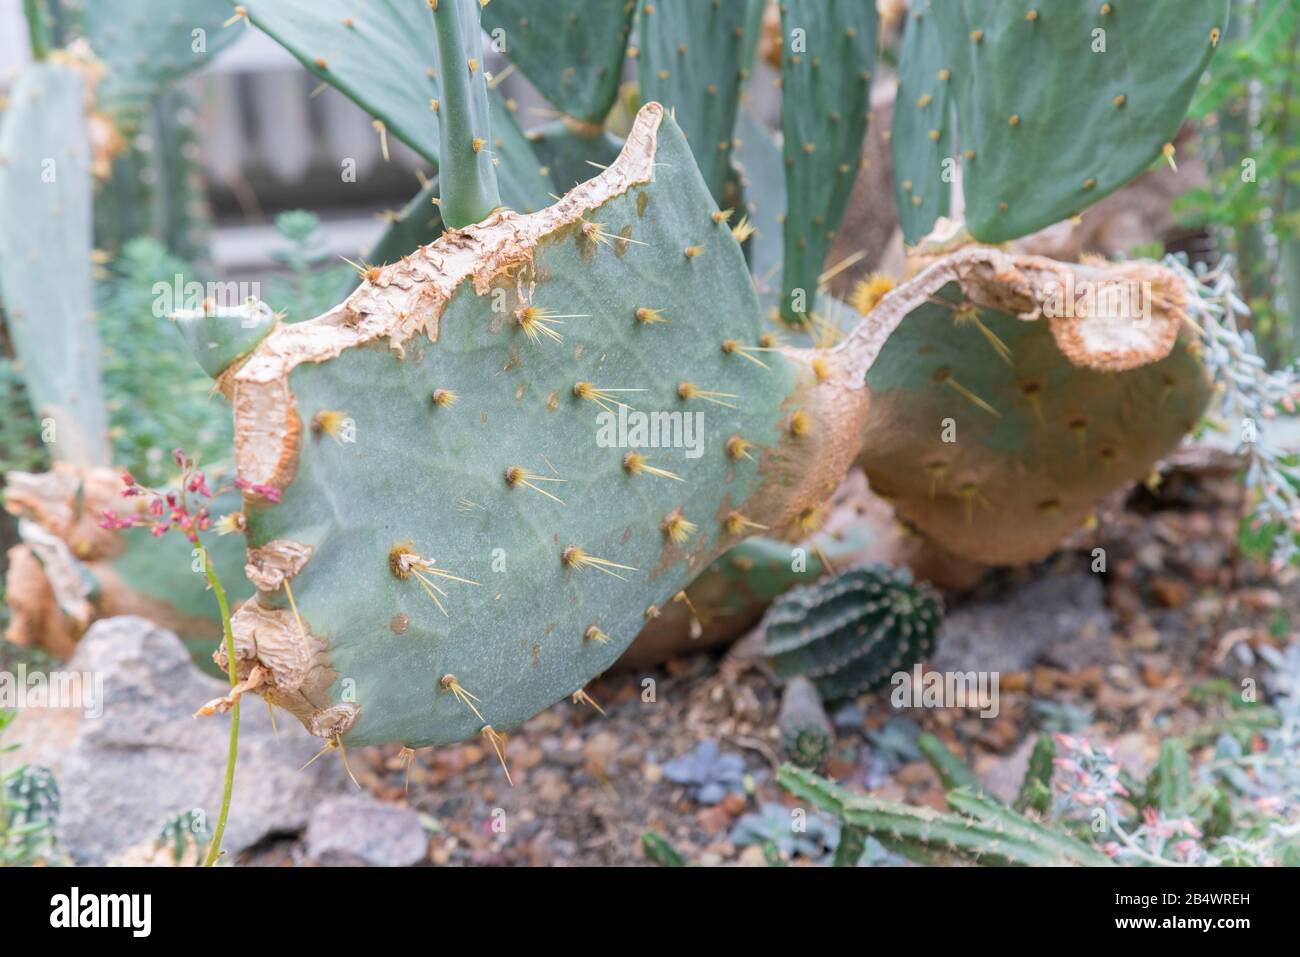 green broken cactus in a natural environment. Stock Photo